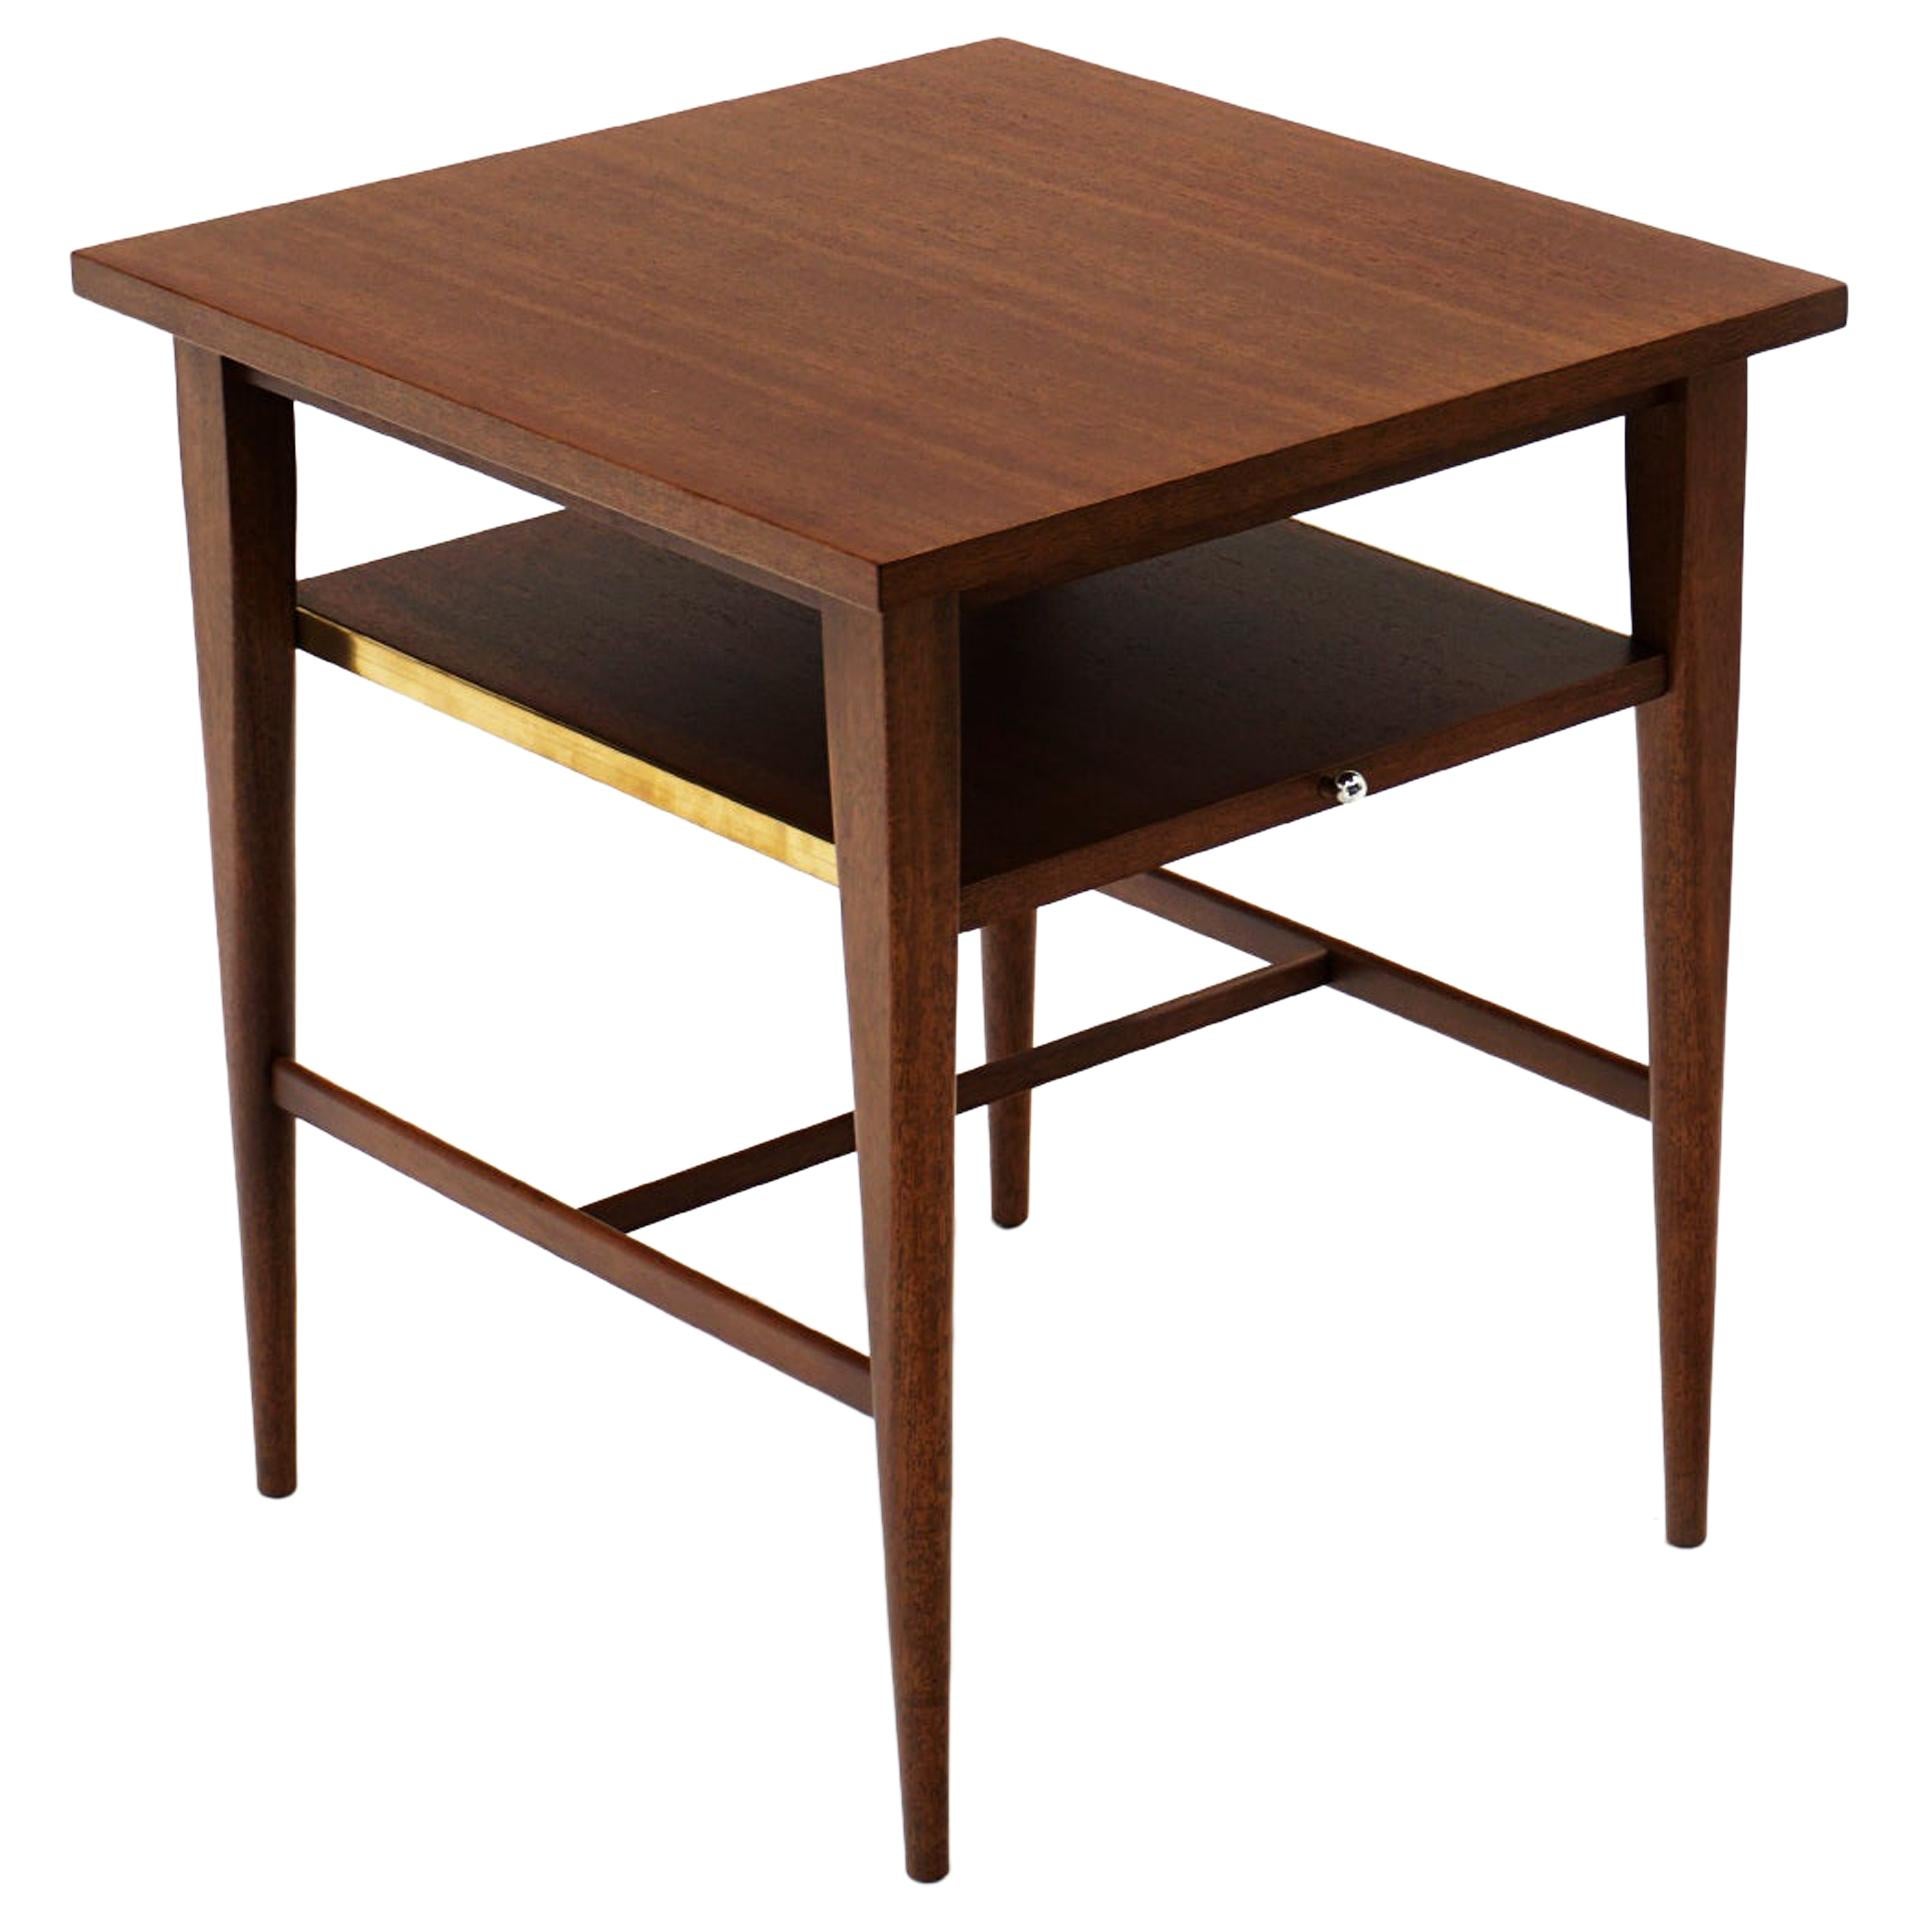 Paul McCobb Model 1047 Side / End Table / Nightstand for Calvin, Slide Out Shelf